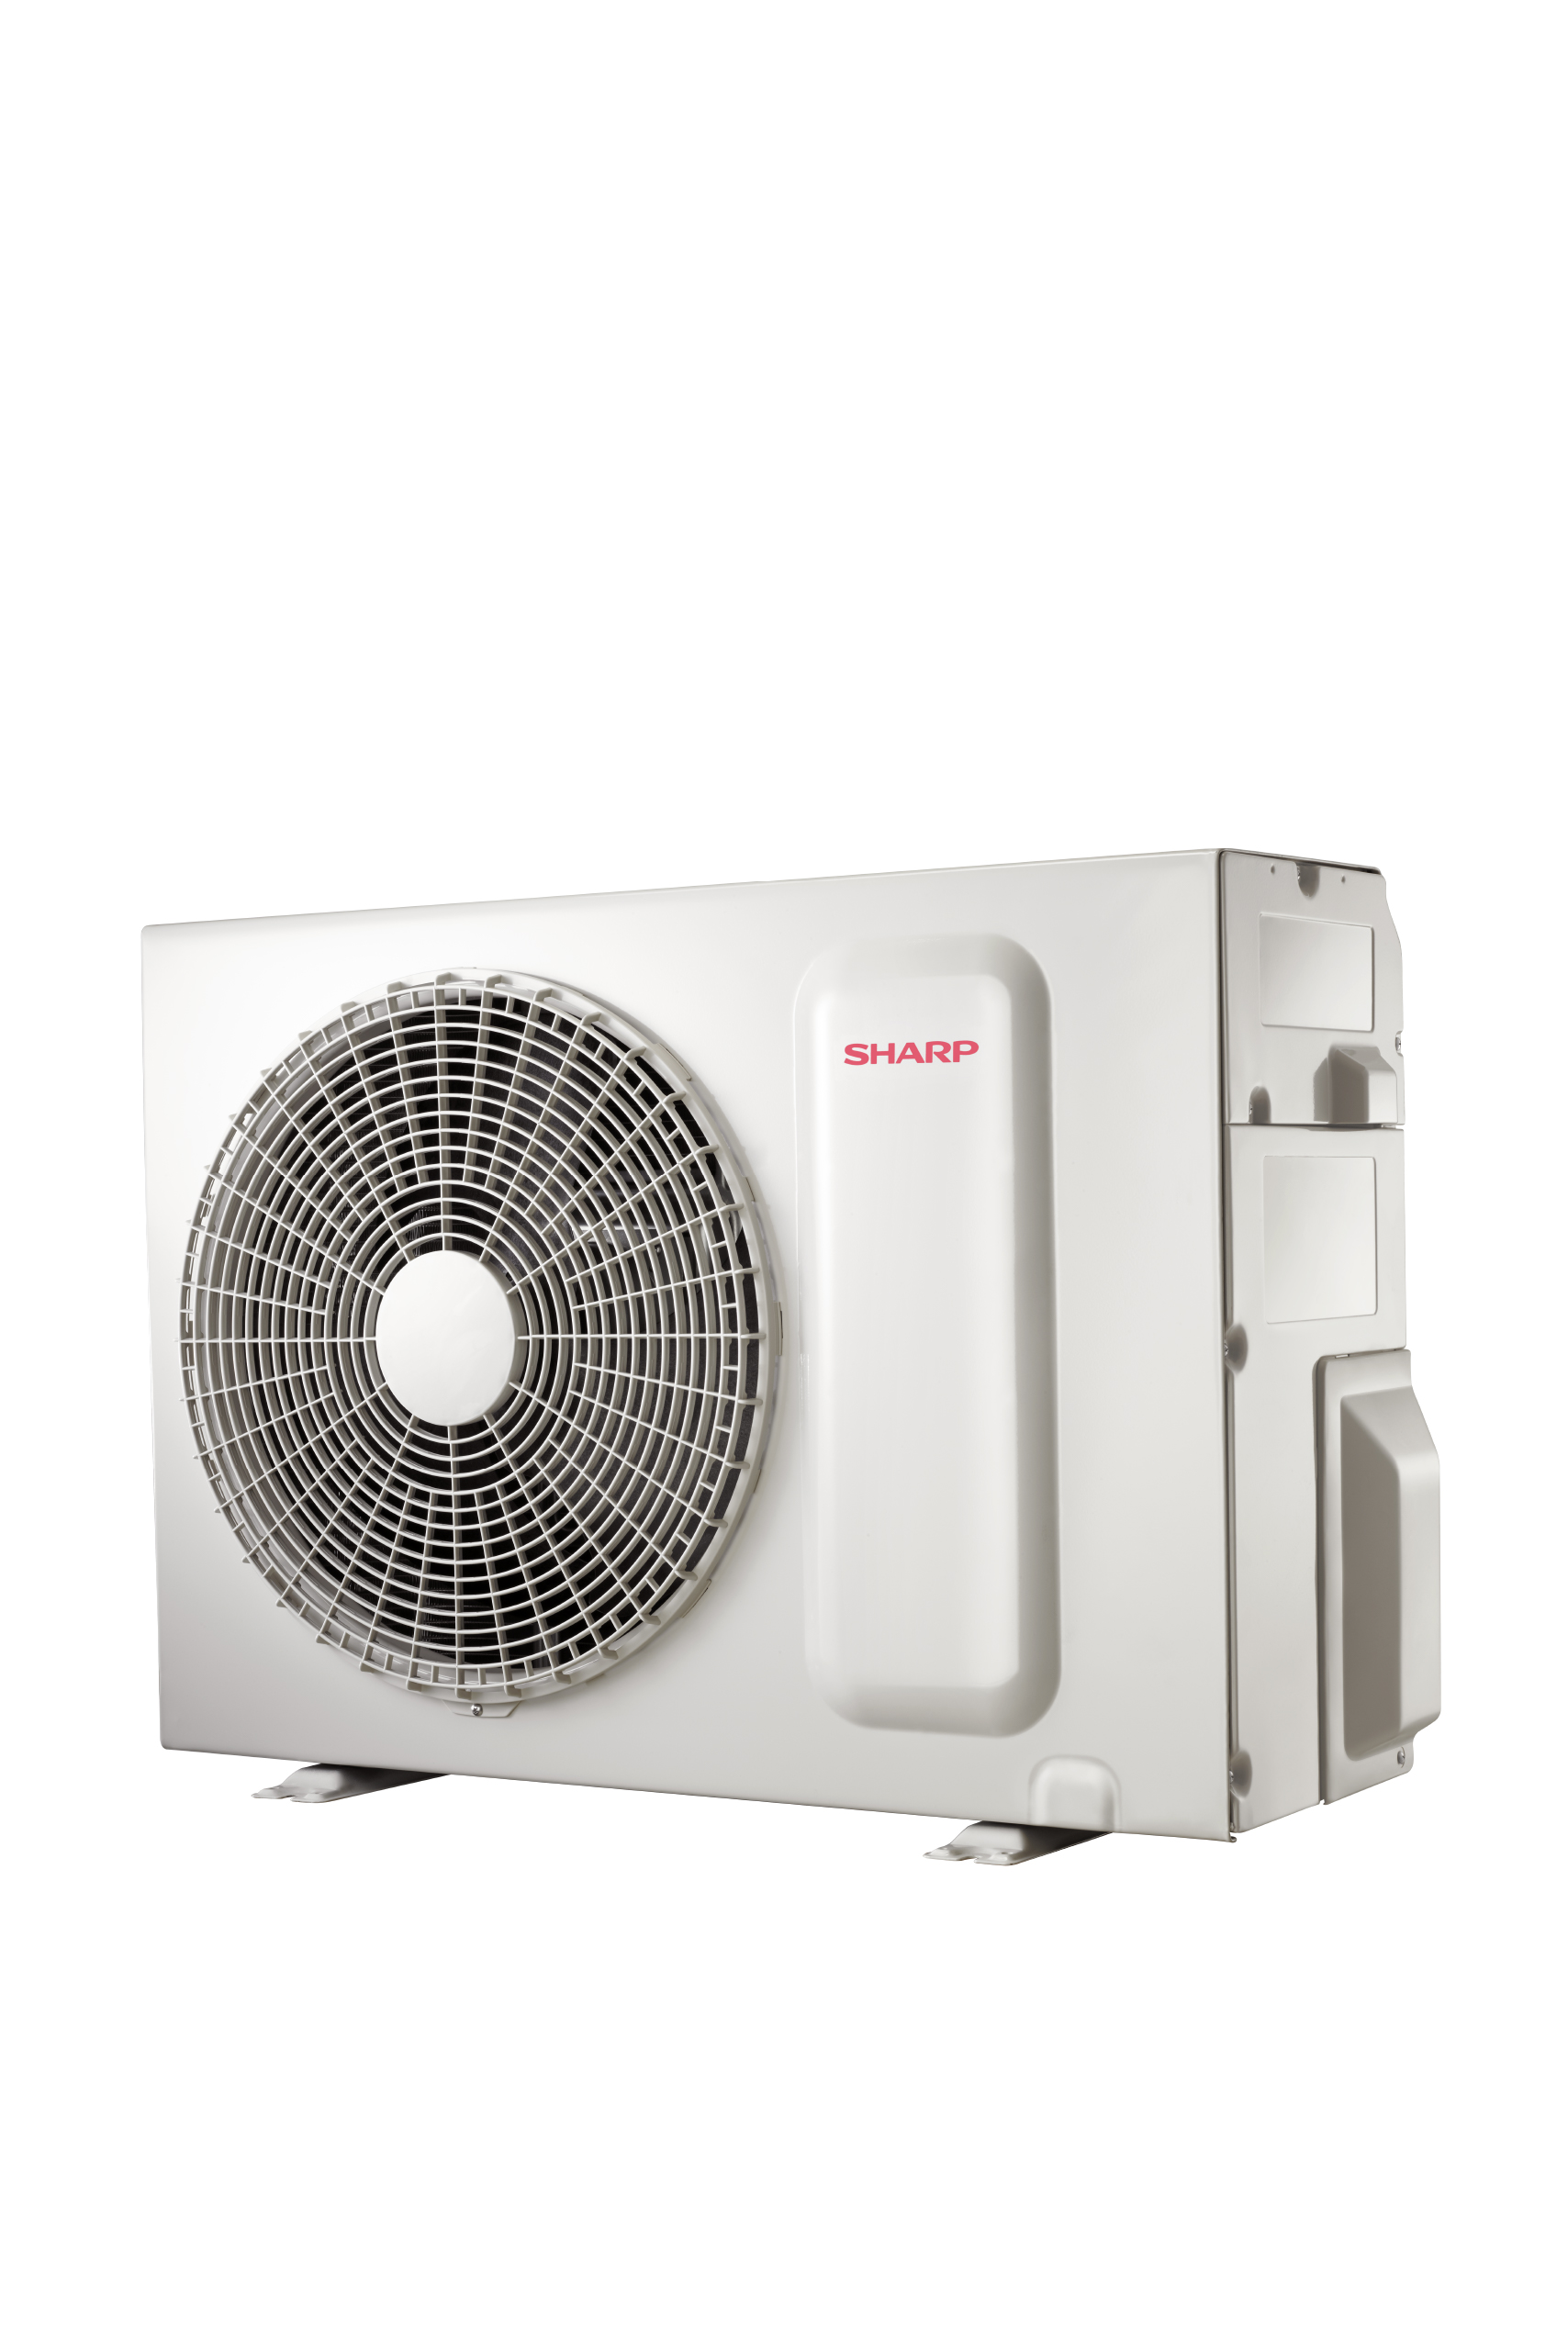 Sharp Air Conditioner 1 Ton